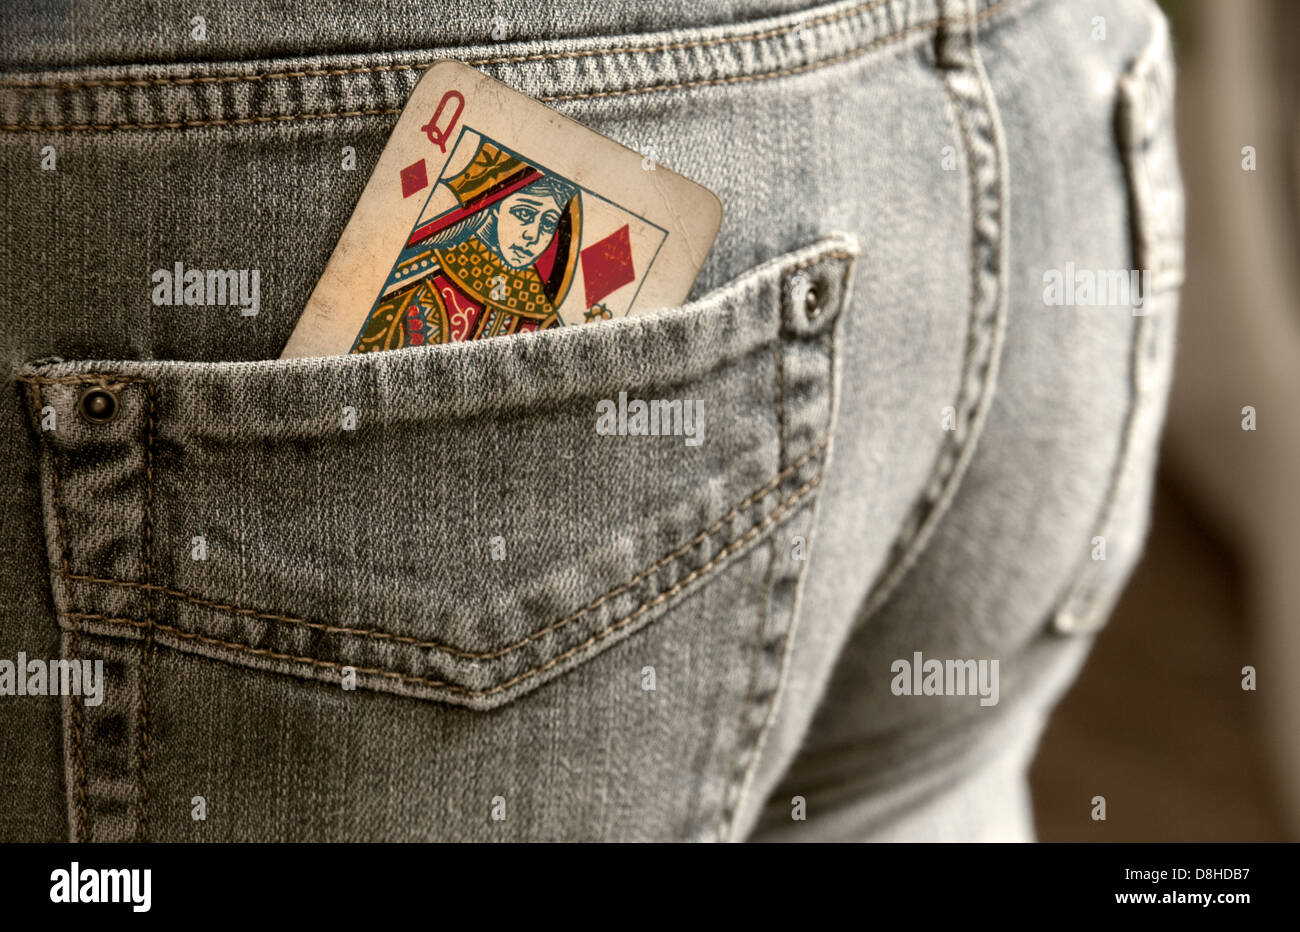 Comment jouer la Reine de diamants jeu de carte dans une poche arrière, d'une paire de jeans Banque D'Images